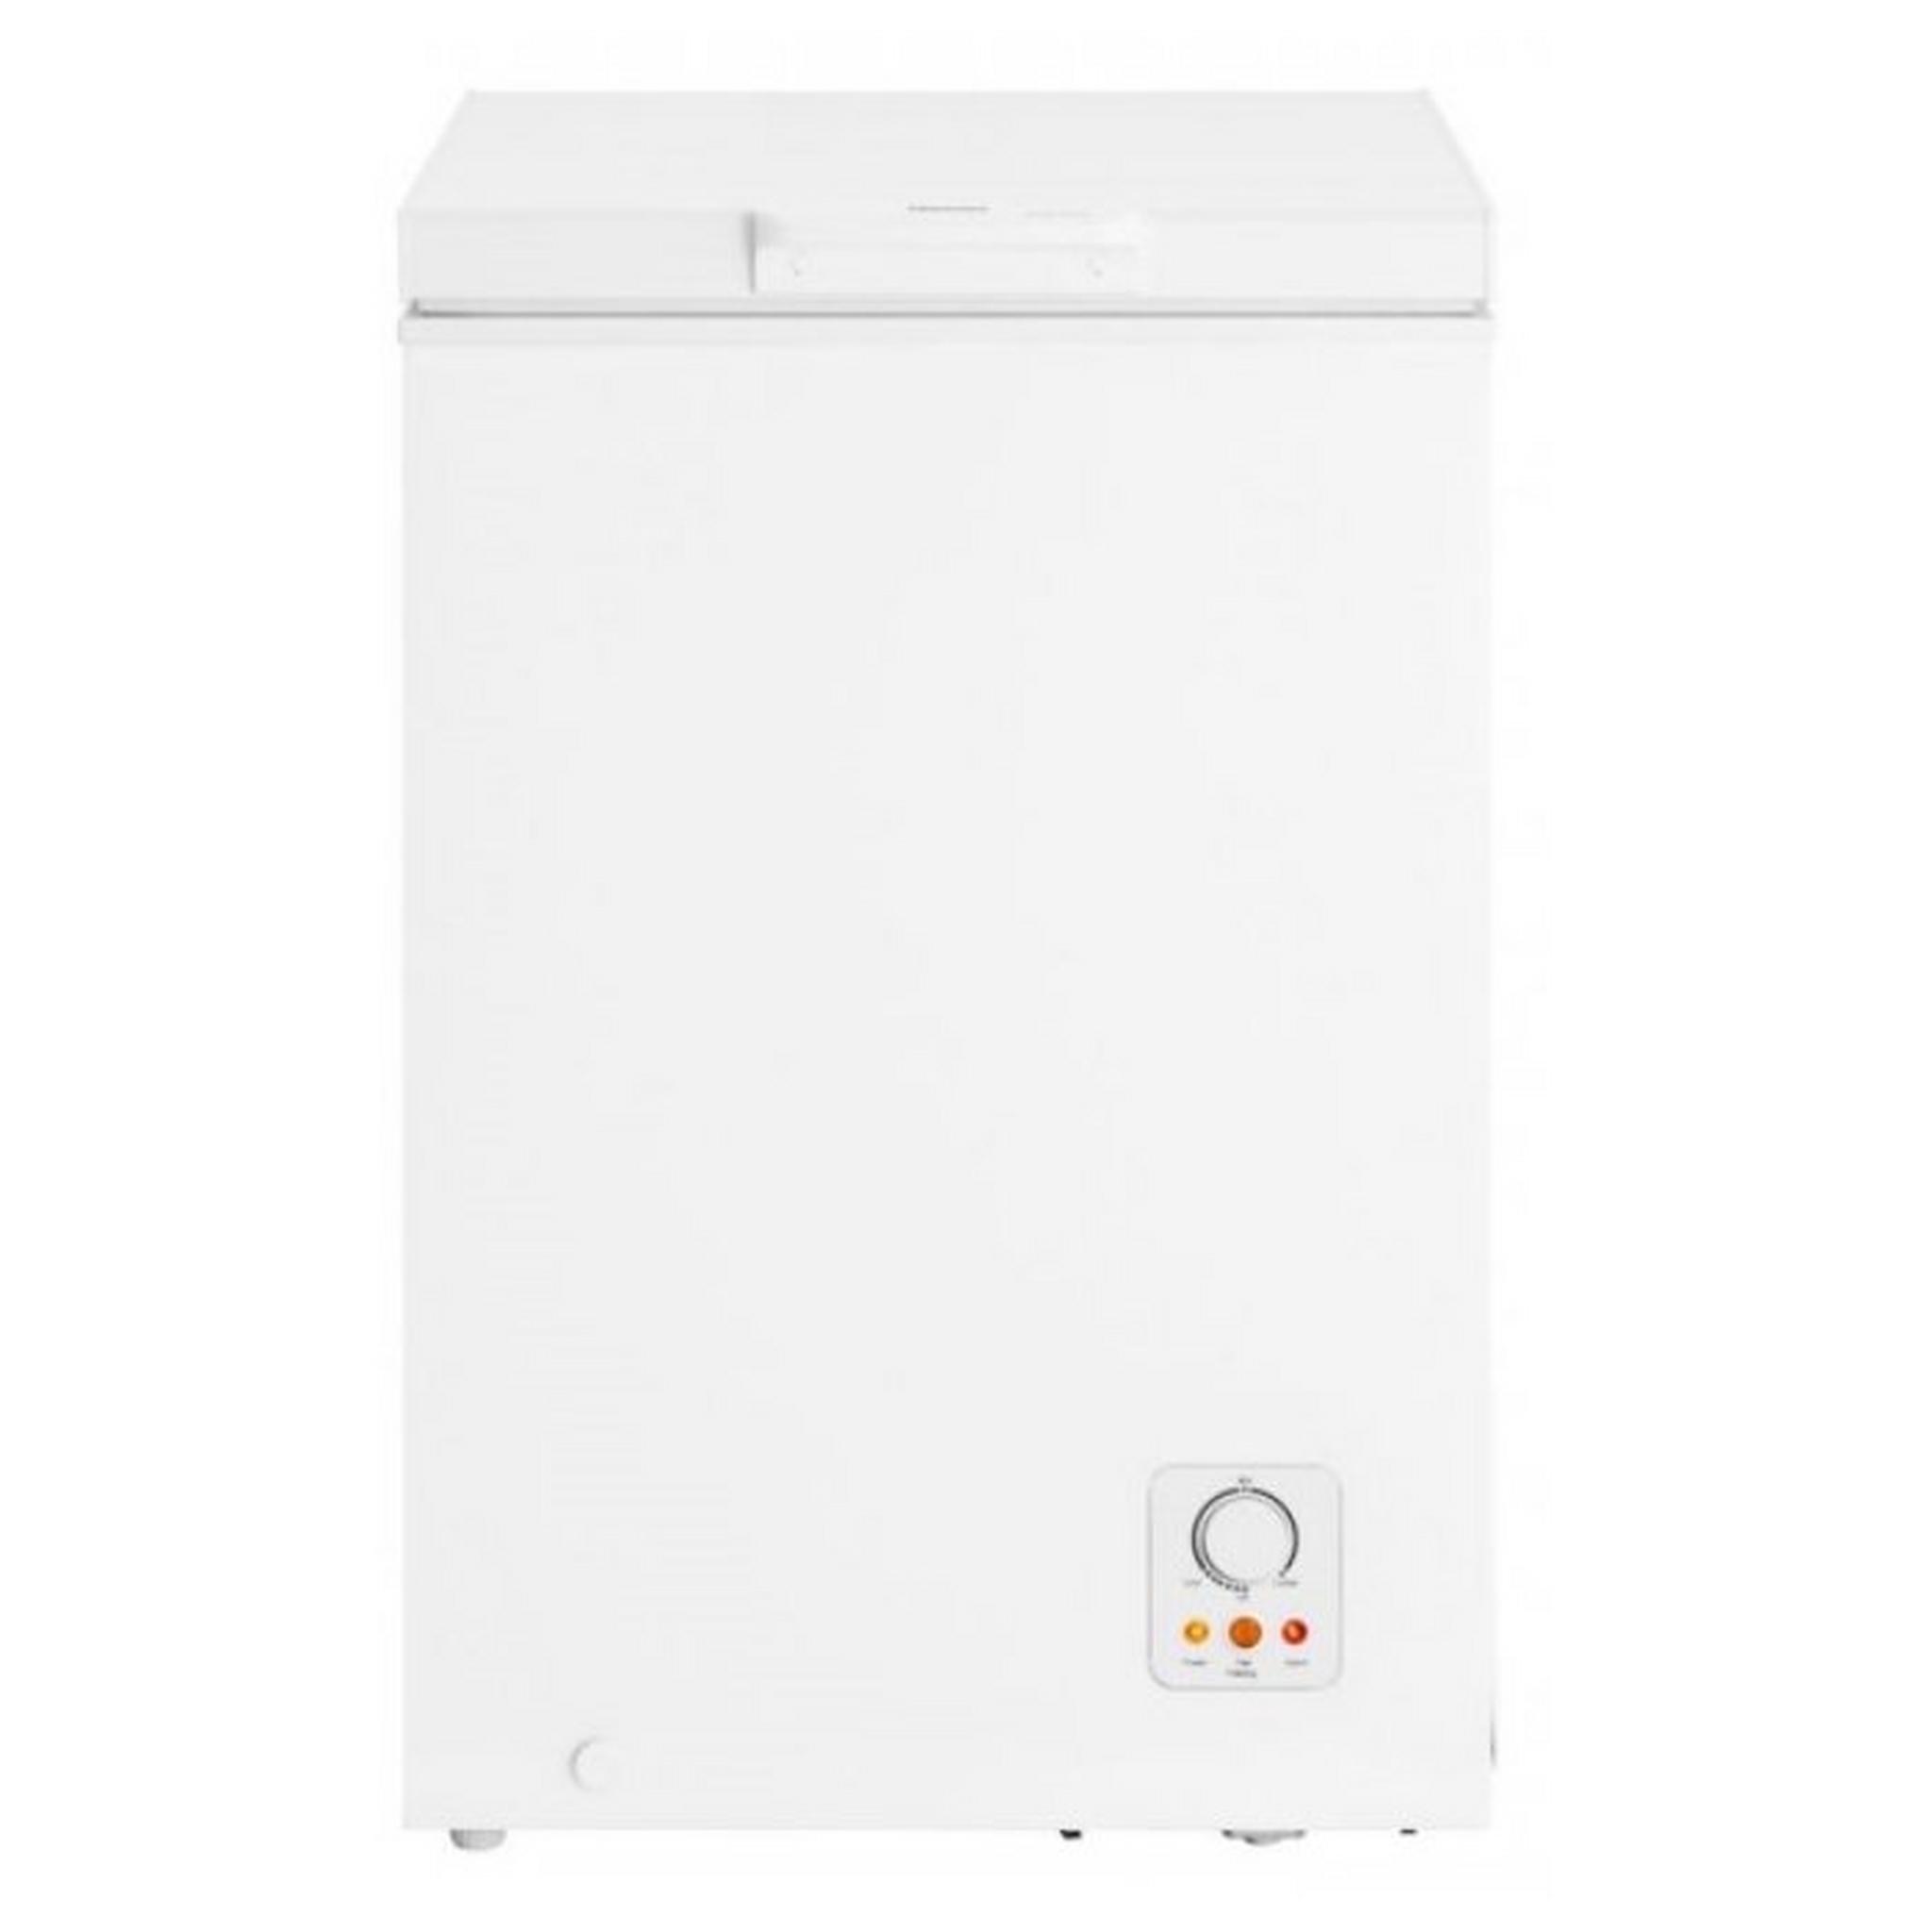 Hisense 3.4 CFT Chest Freezer (FC13DD) - White